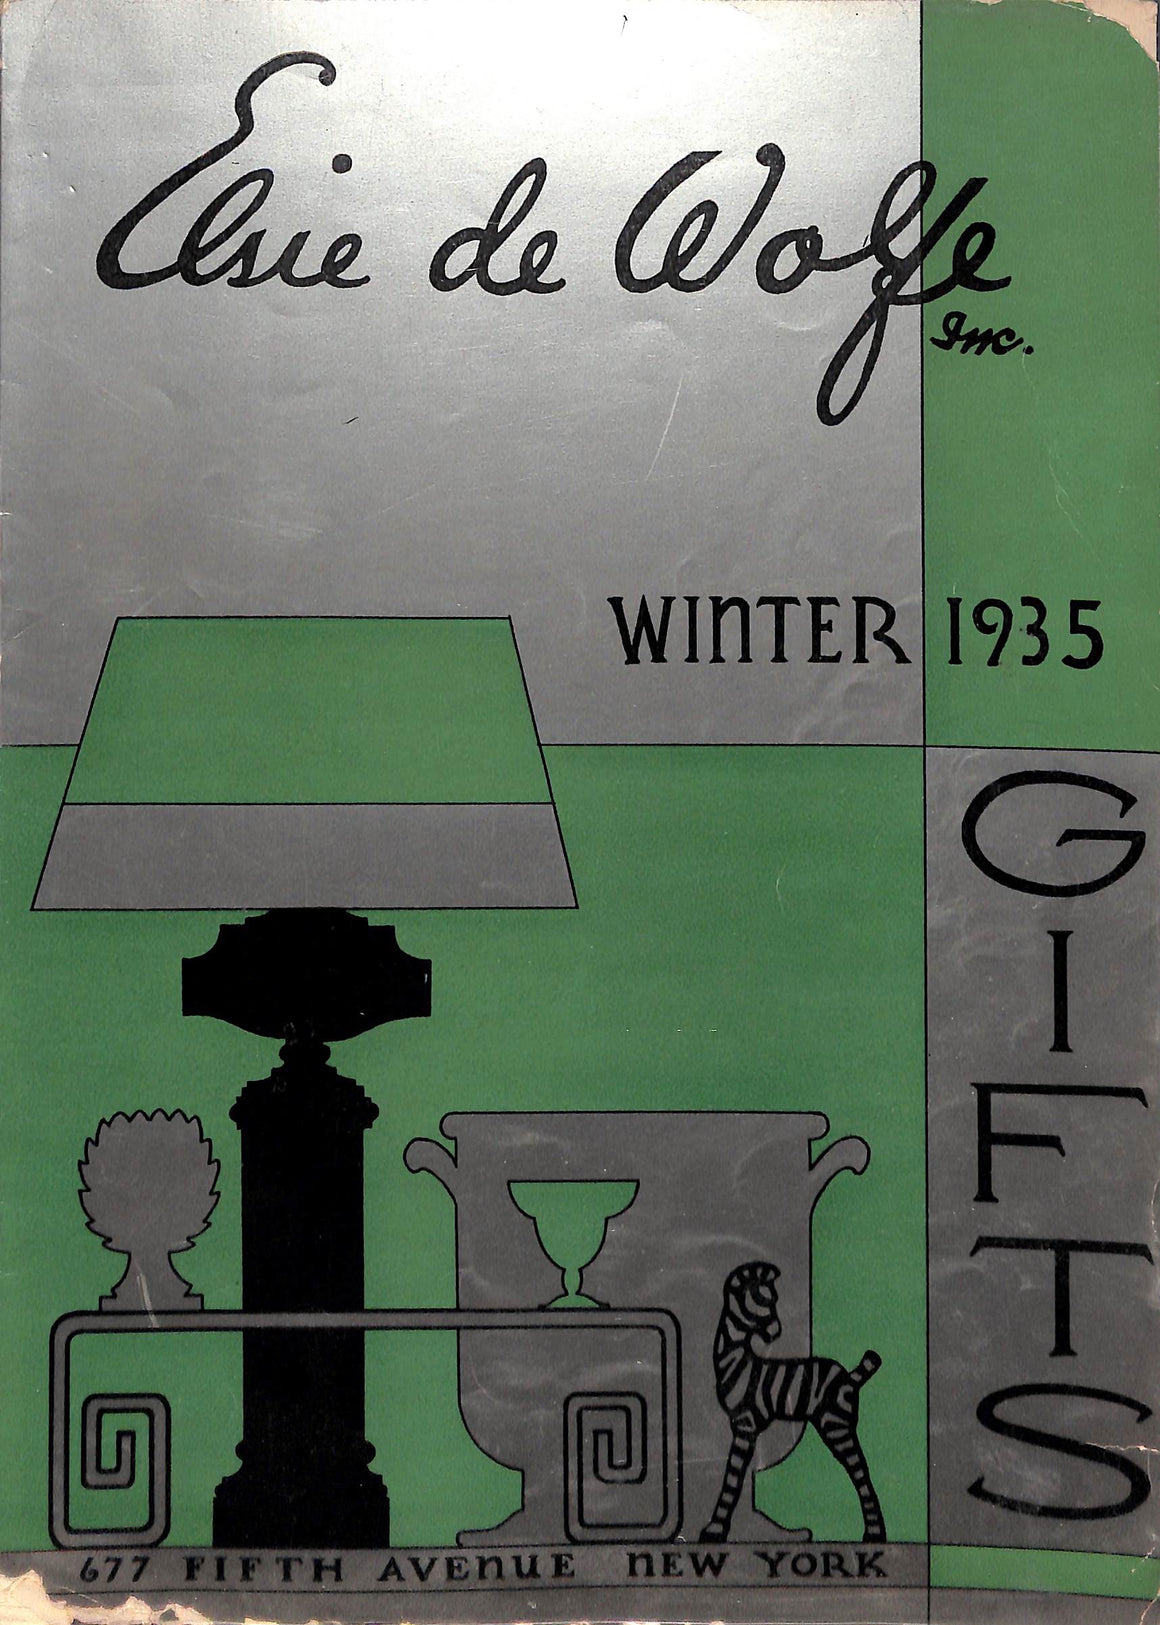 "Elsie De Wolfe Inc. Winter 1935 Gifts"